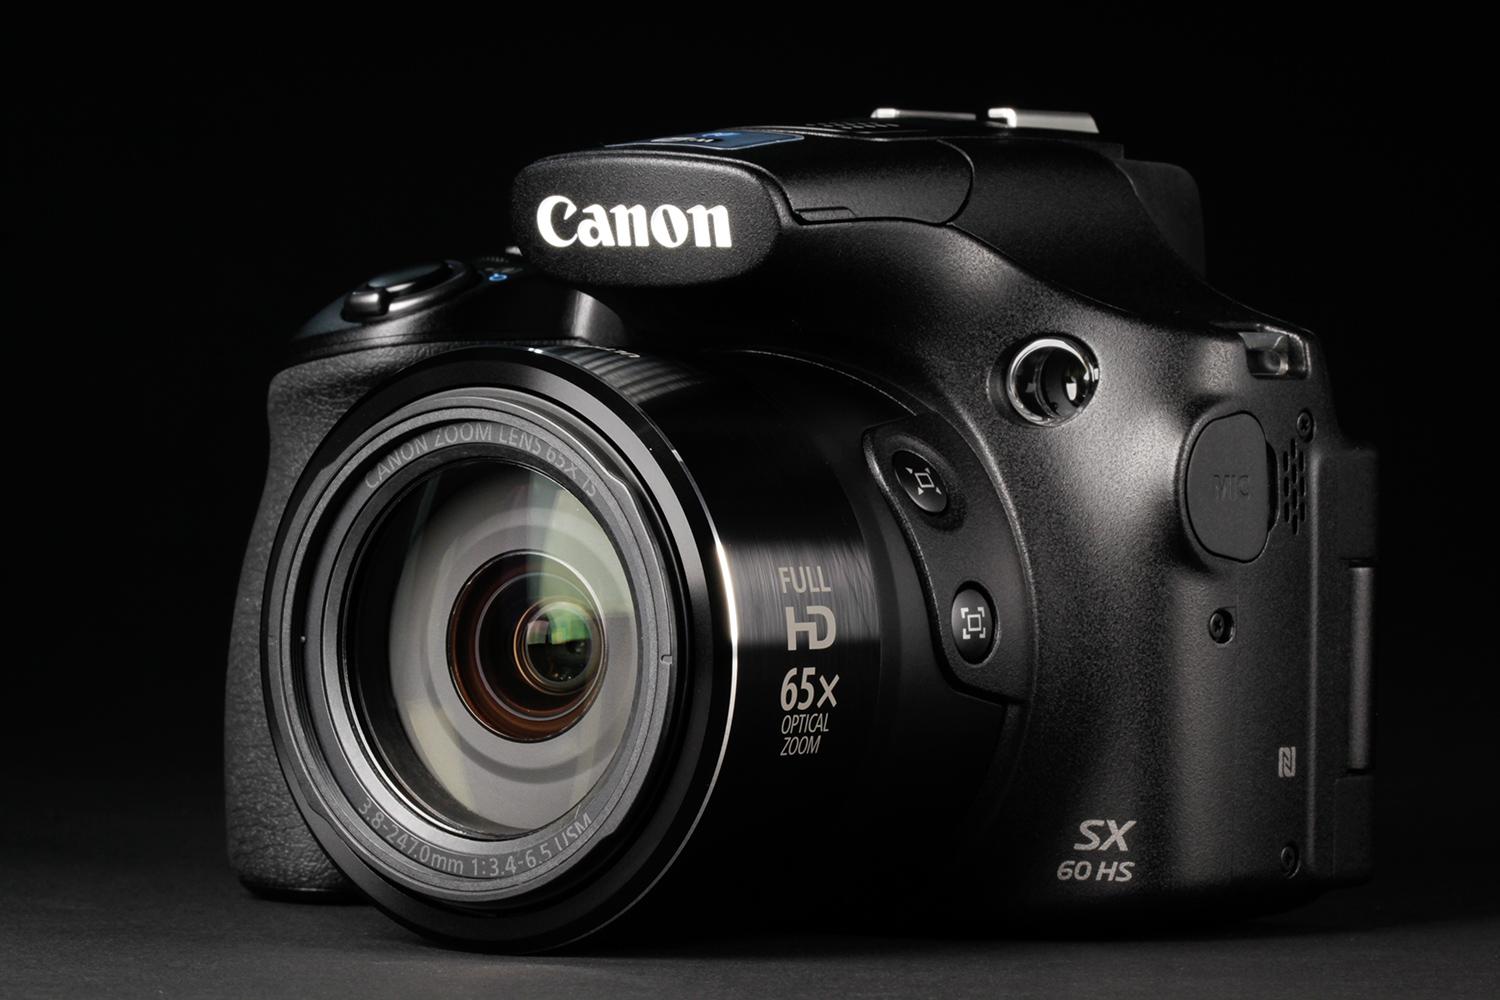 Canon PowerShot SX60 HS review | Digital Trends